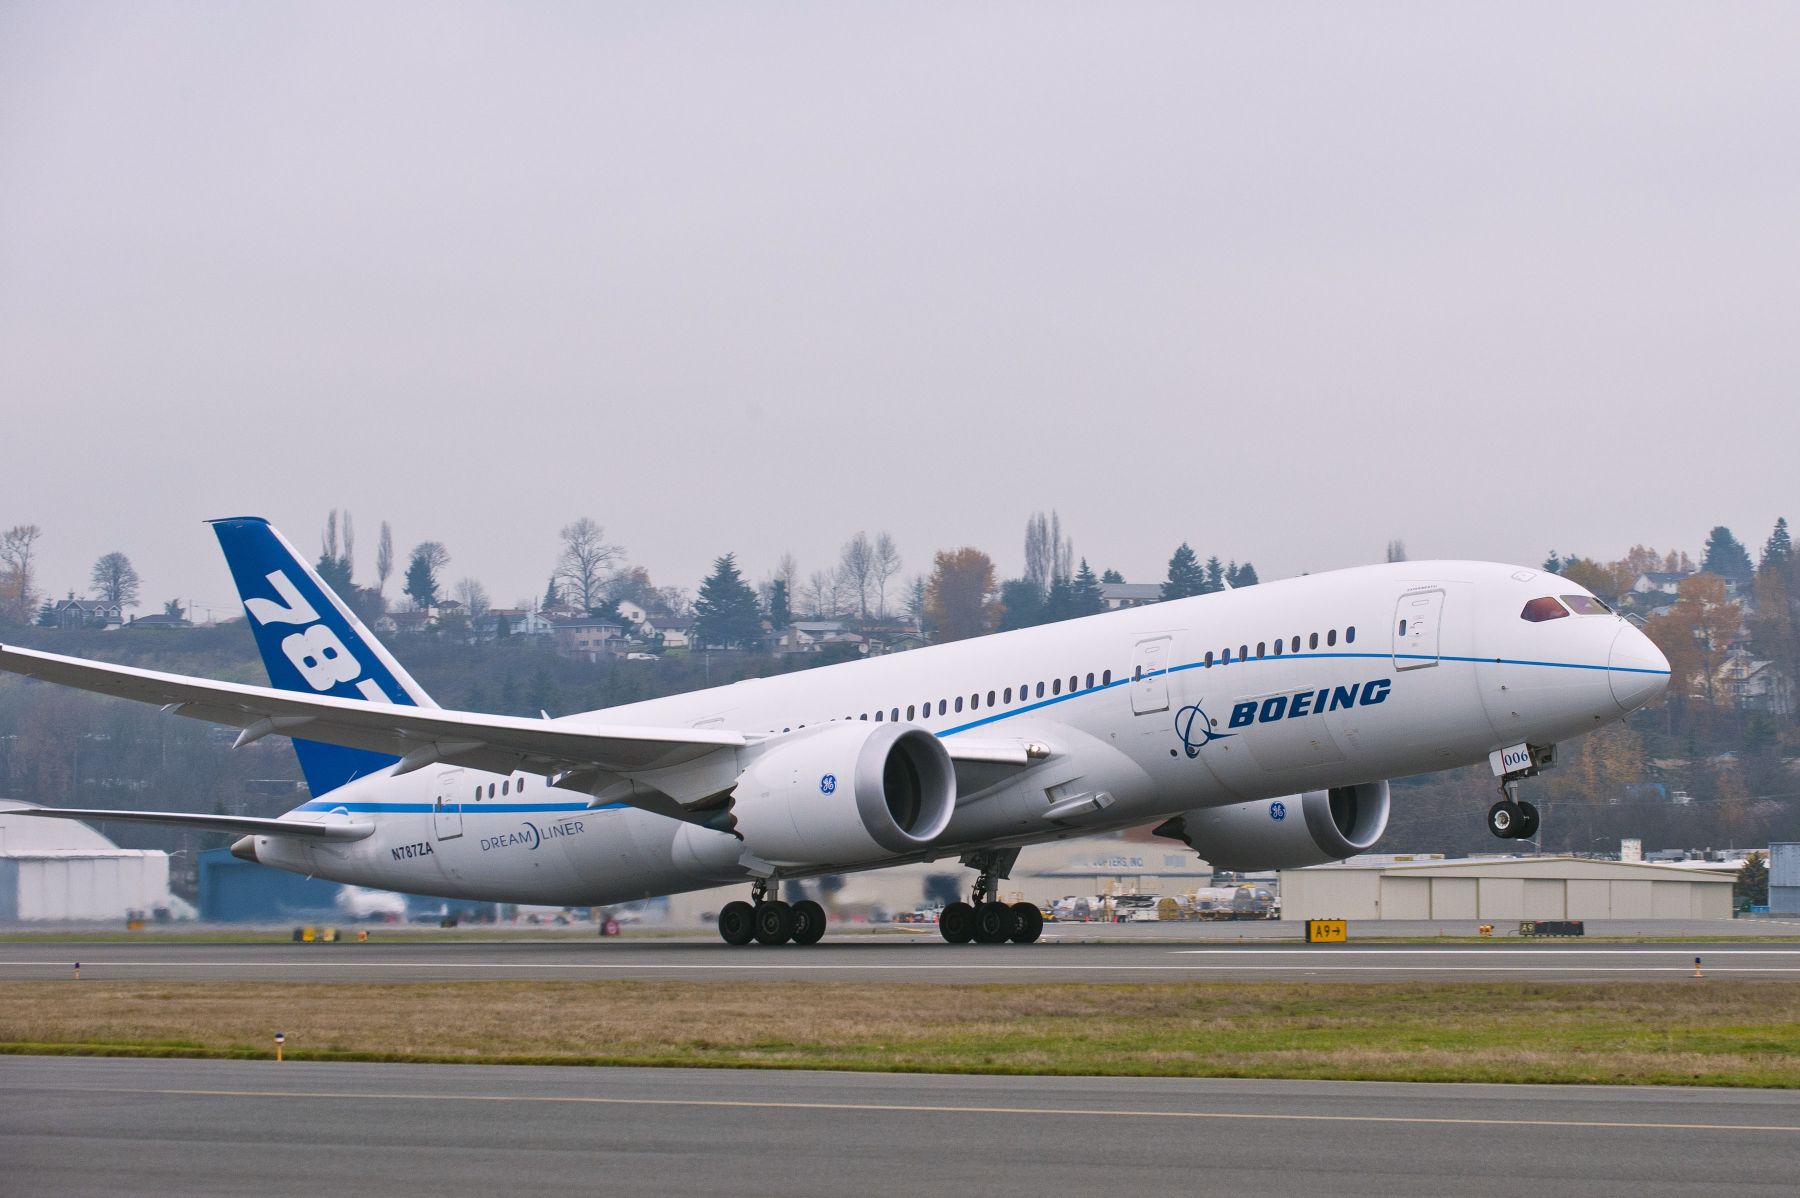 A 787-es érkezése az egyik rekordrepülésről